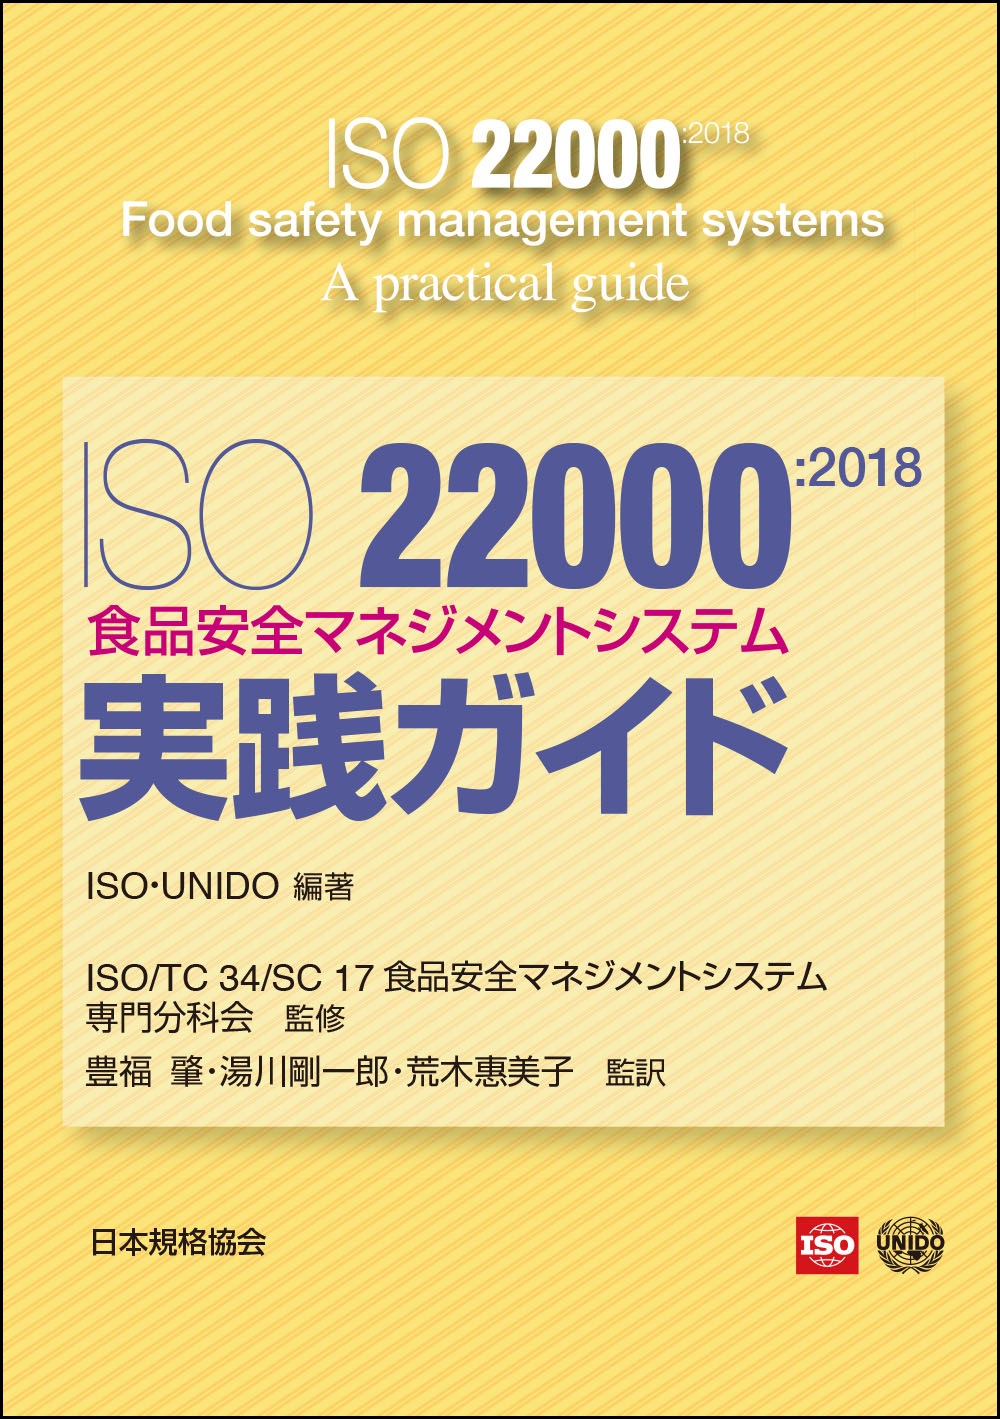 書籍「ISO22000 実践ガイド」